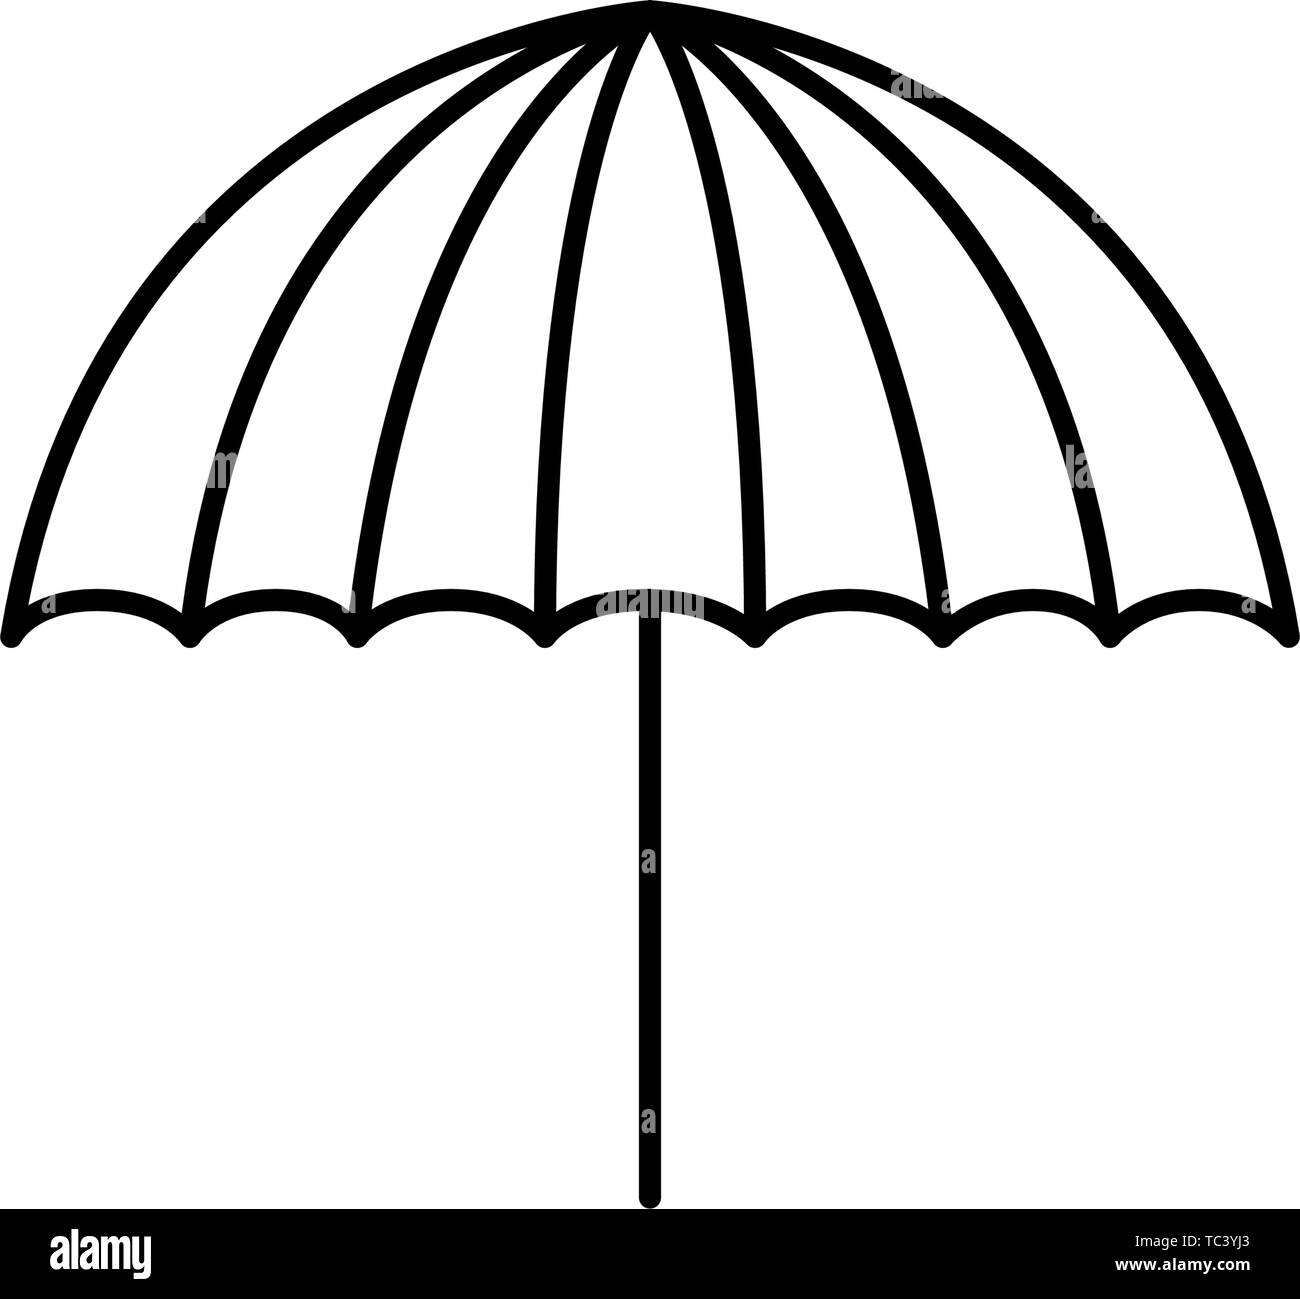 beach umbrella for summer striped icon Stock Vector